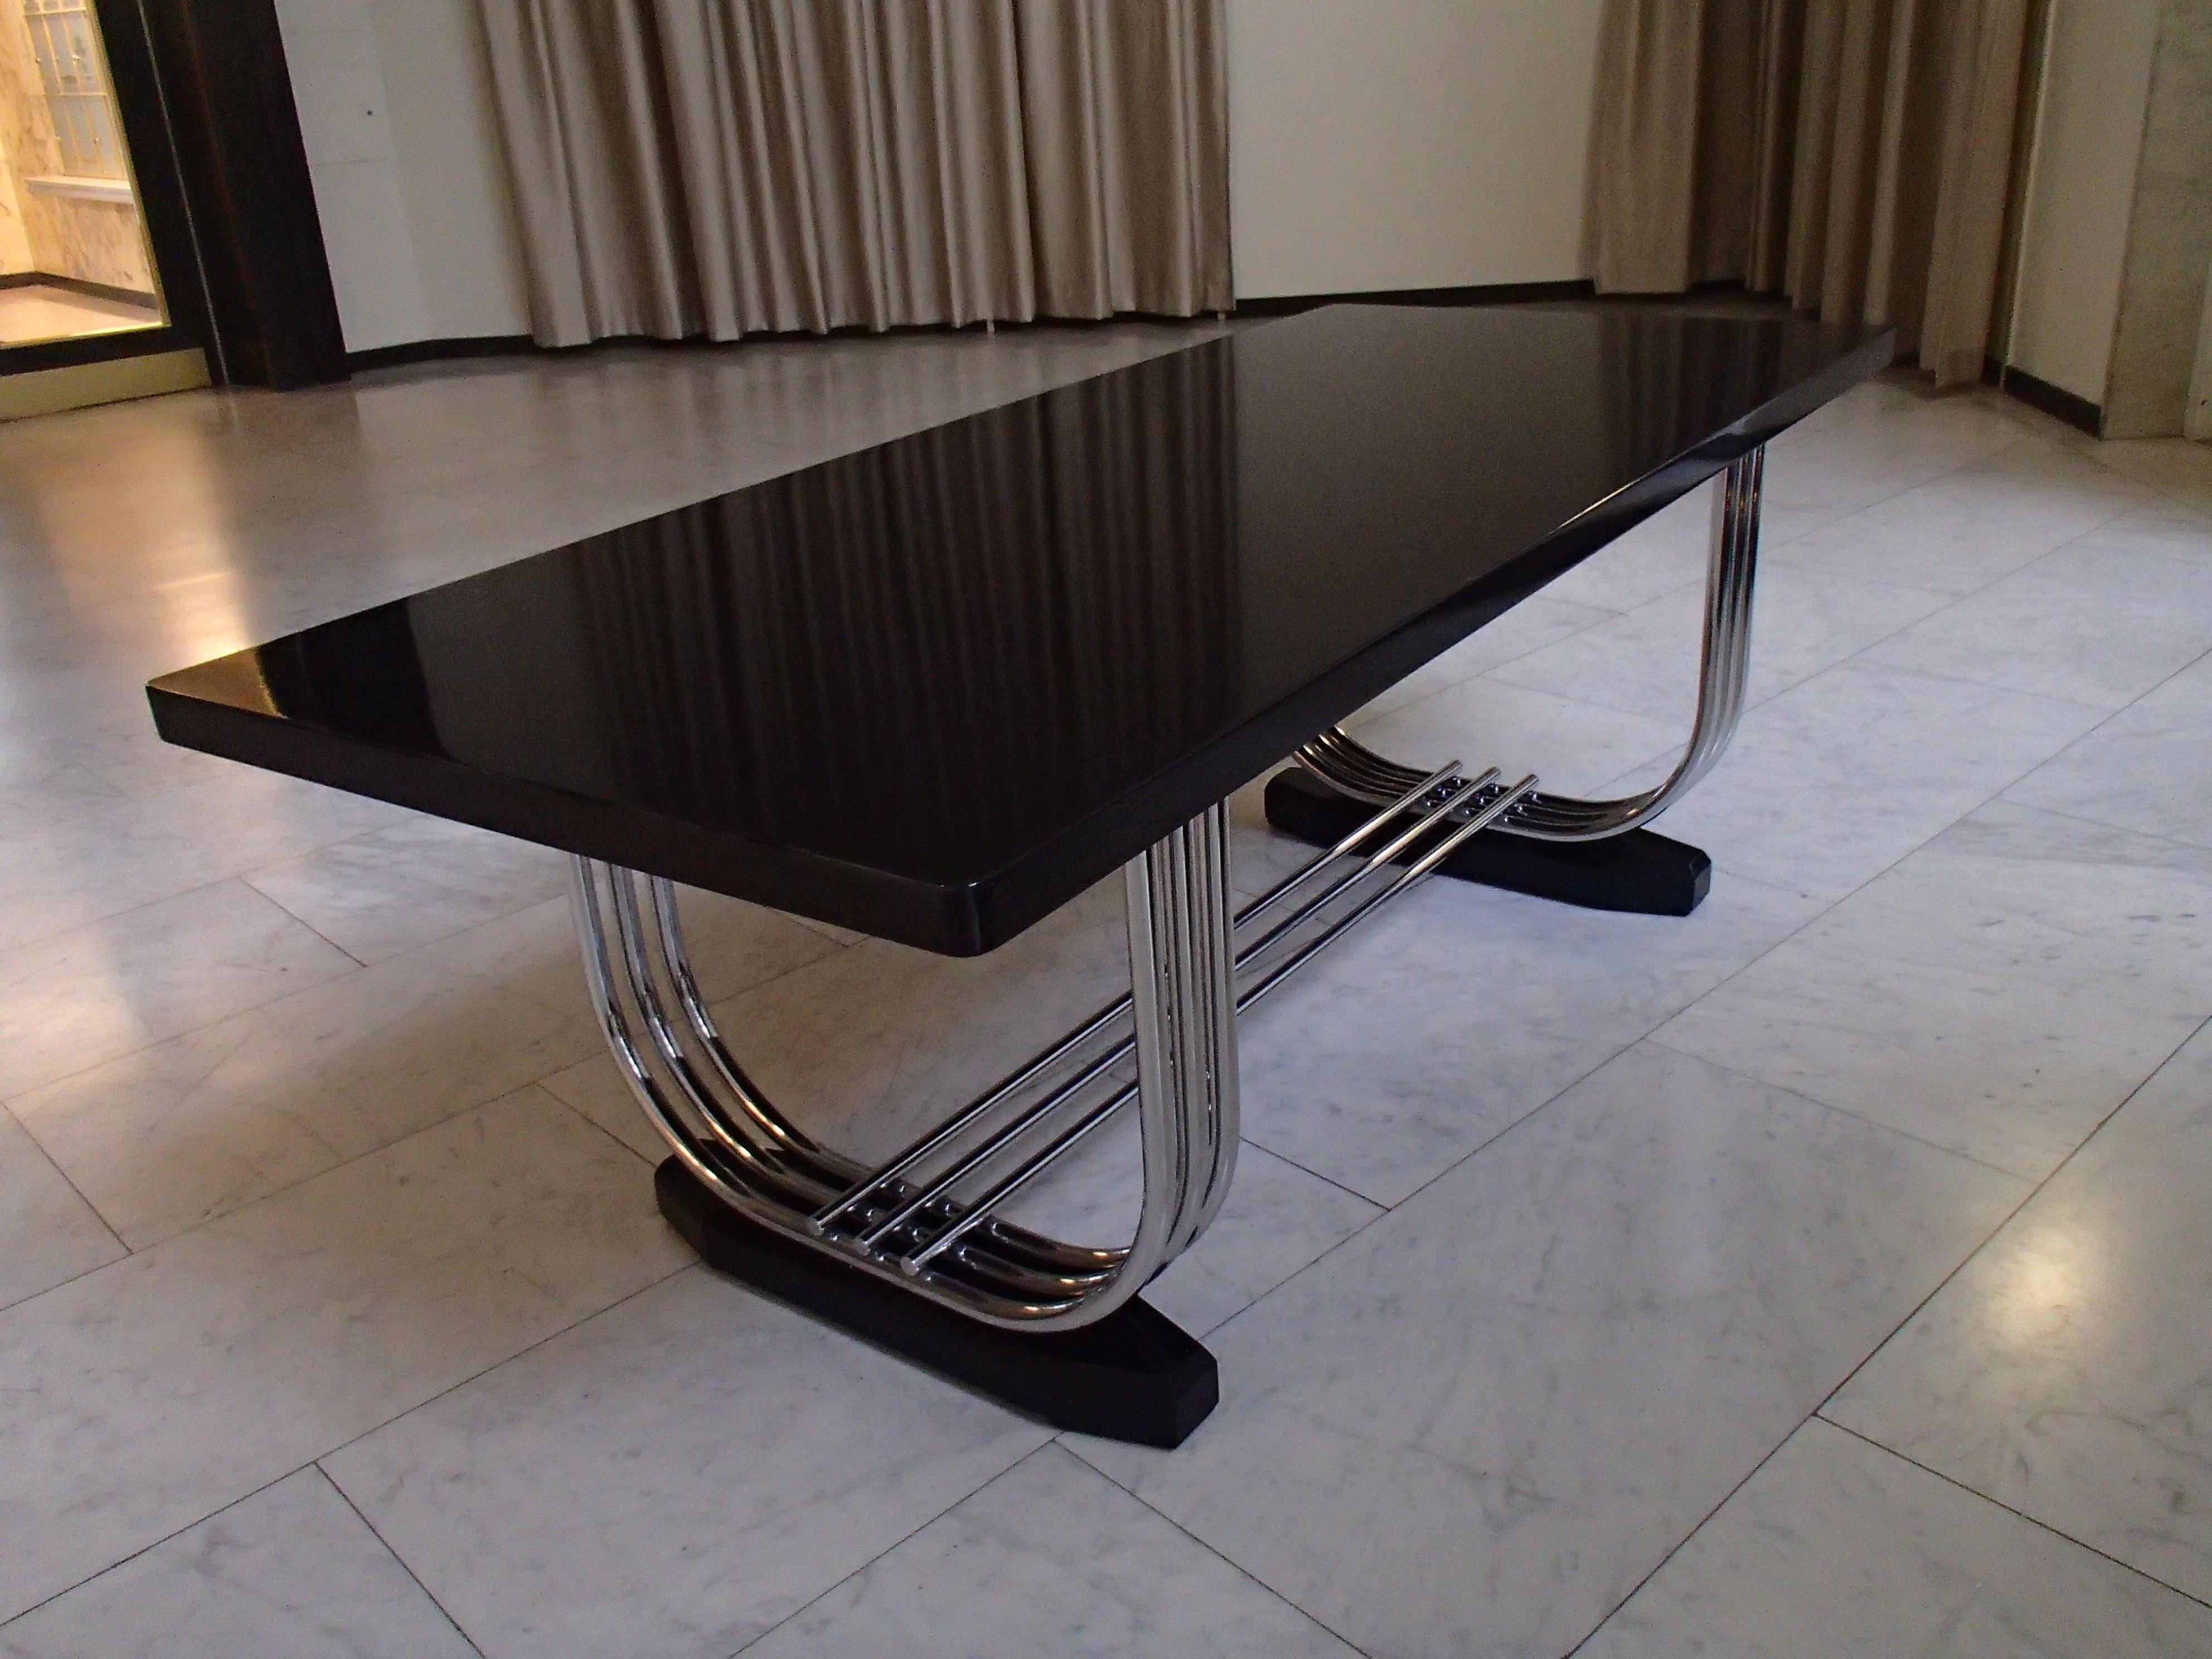 Sehr eleganter, französisch inspirierter großer, schwarz lackierter Tisch mit verchromten Rohrbeinen, hergestellt von PEL zwischen 1933 und 1936 .Serge Chermayeff (1900-1996)
 war einer der meistbewunderten britischen Architekten und Designer der